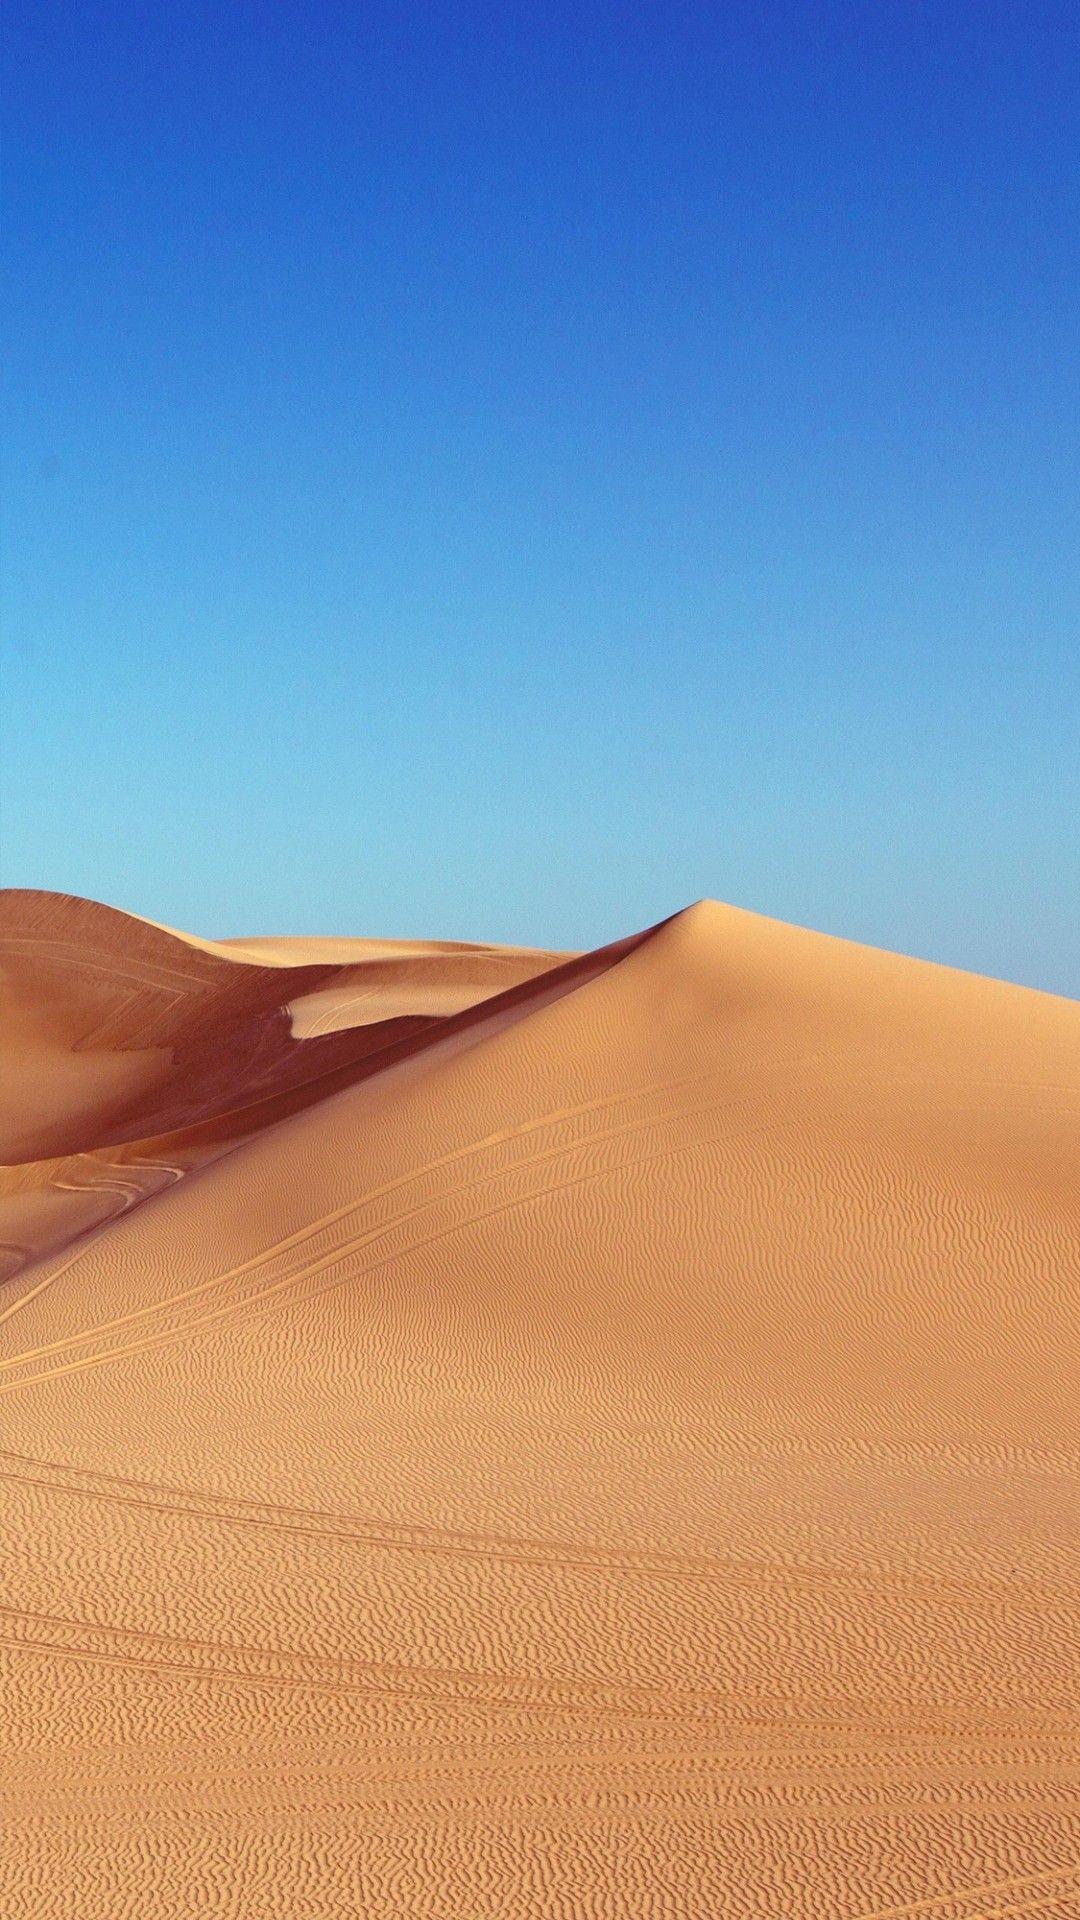 Dune Wallpapers